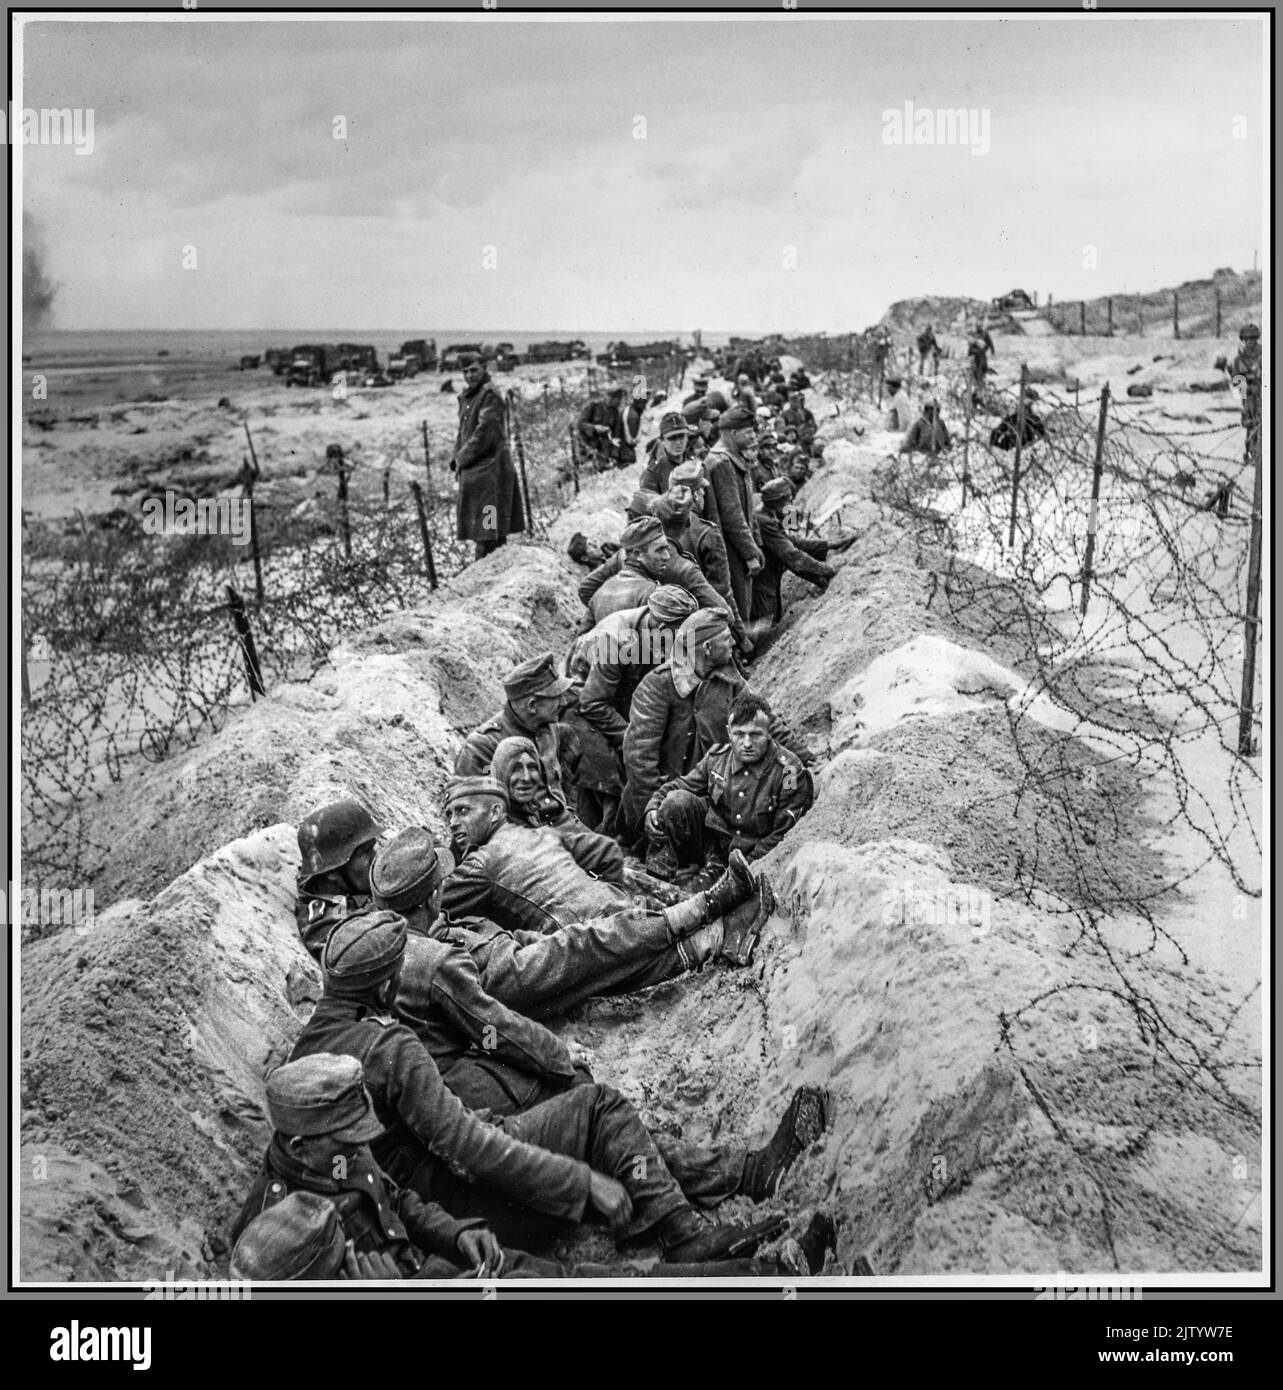 WW2 Kriegsgefangene Nazi-Deutschland: Strände der Normandie nach dem D-Day 1944 mit deutschen Nazi-Kriegsgefangenen nach dem D-Day mit amerikanischen Soldaten, die sie vor dem Transport bewachen Stockfoto